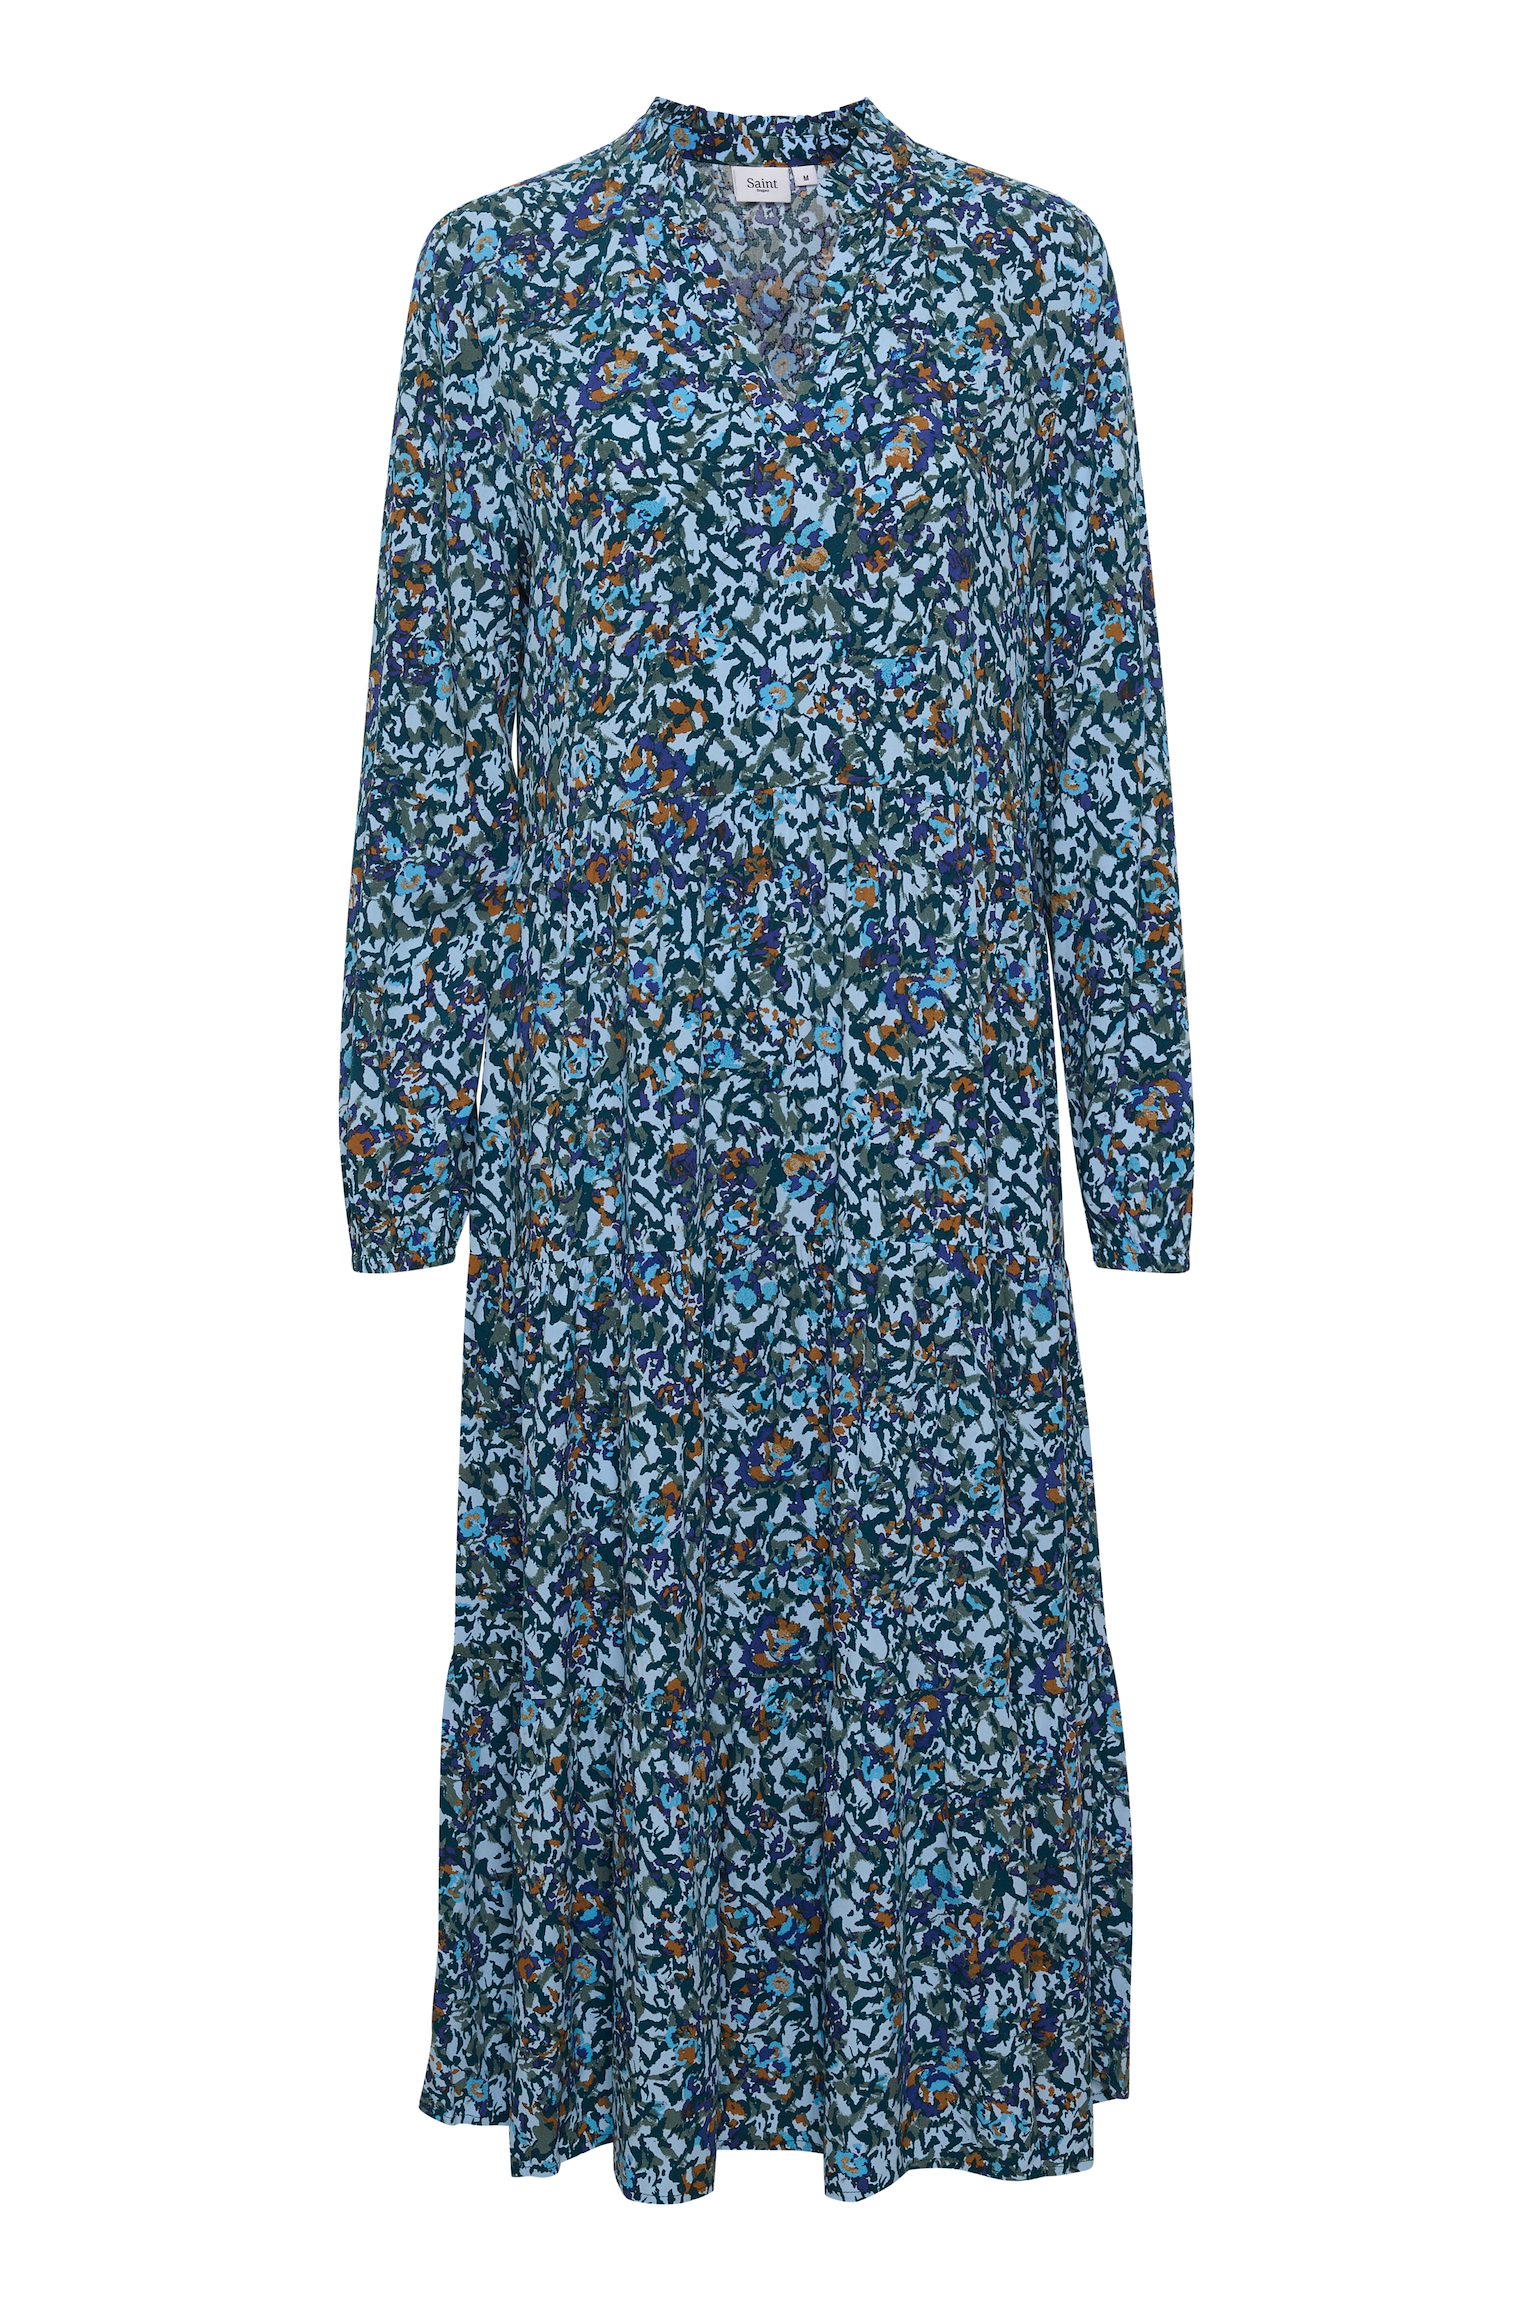 Saint Tropez EDASZ Maxi DRESS Atlantis Floral – Cashmere Blue Fig Cashmere